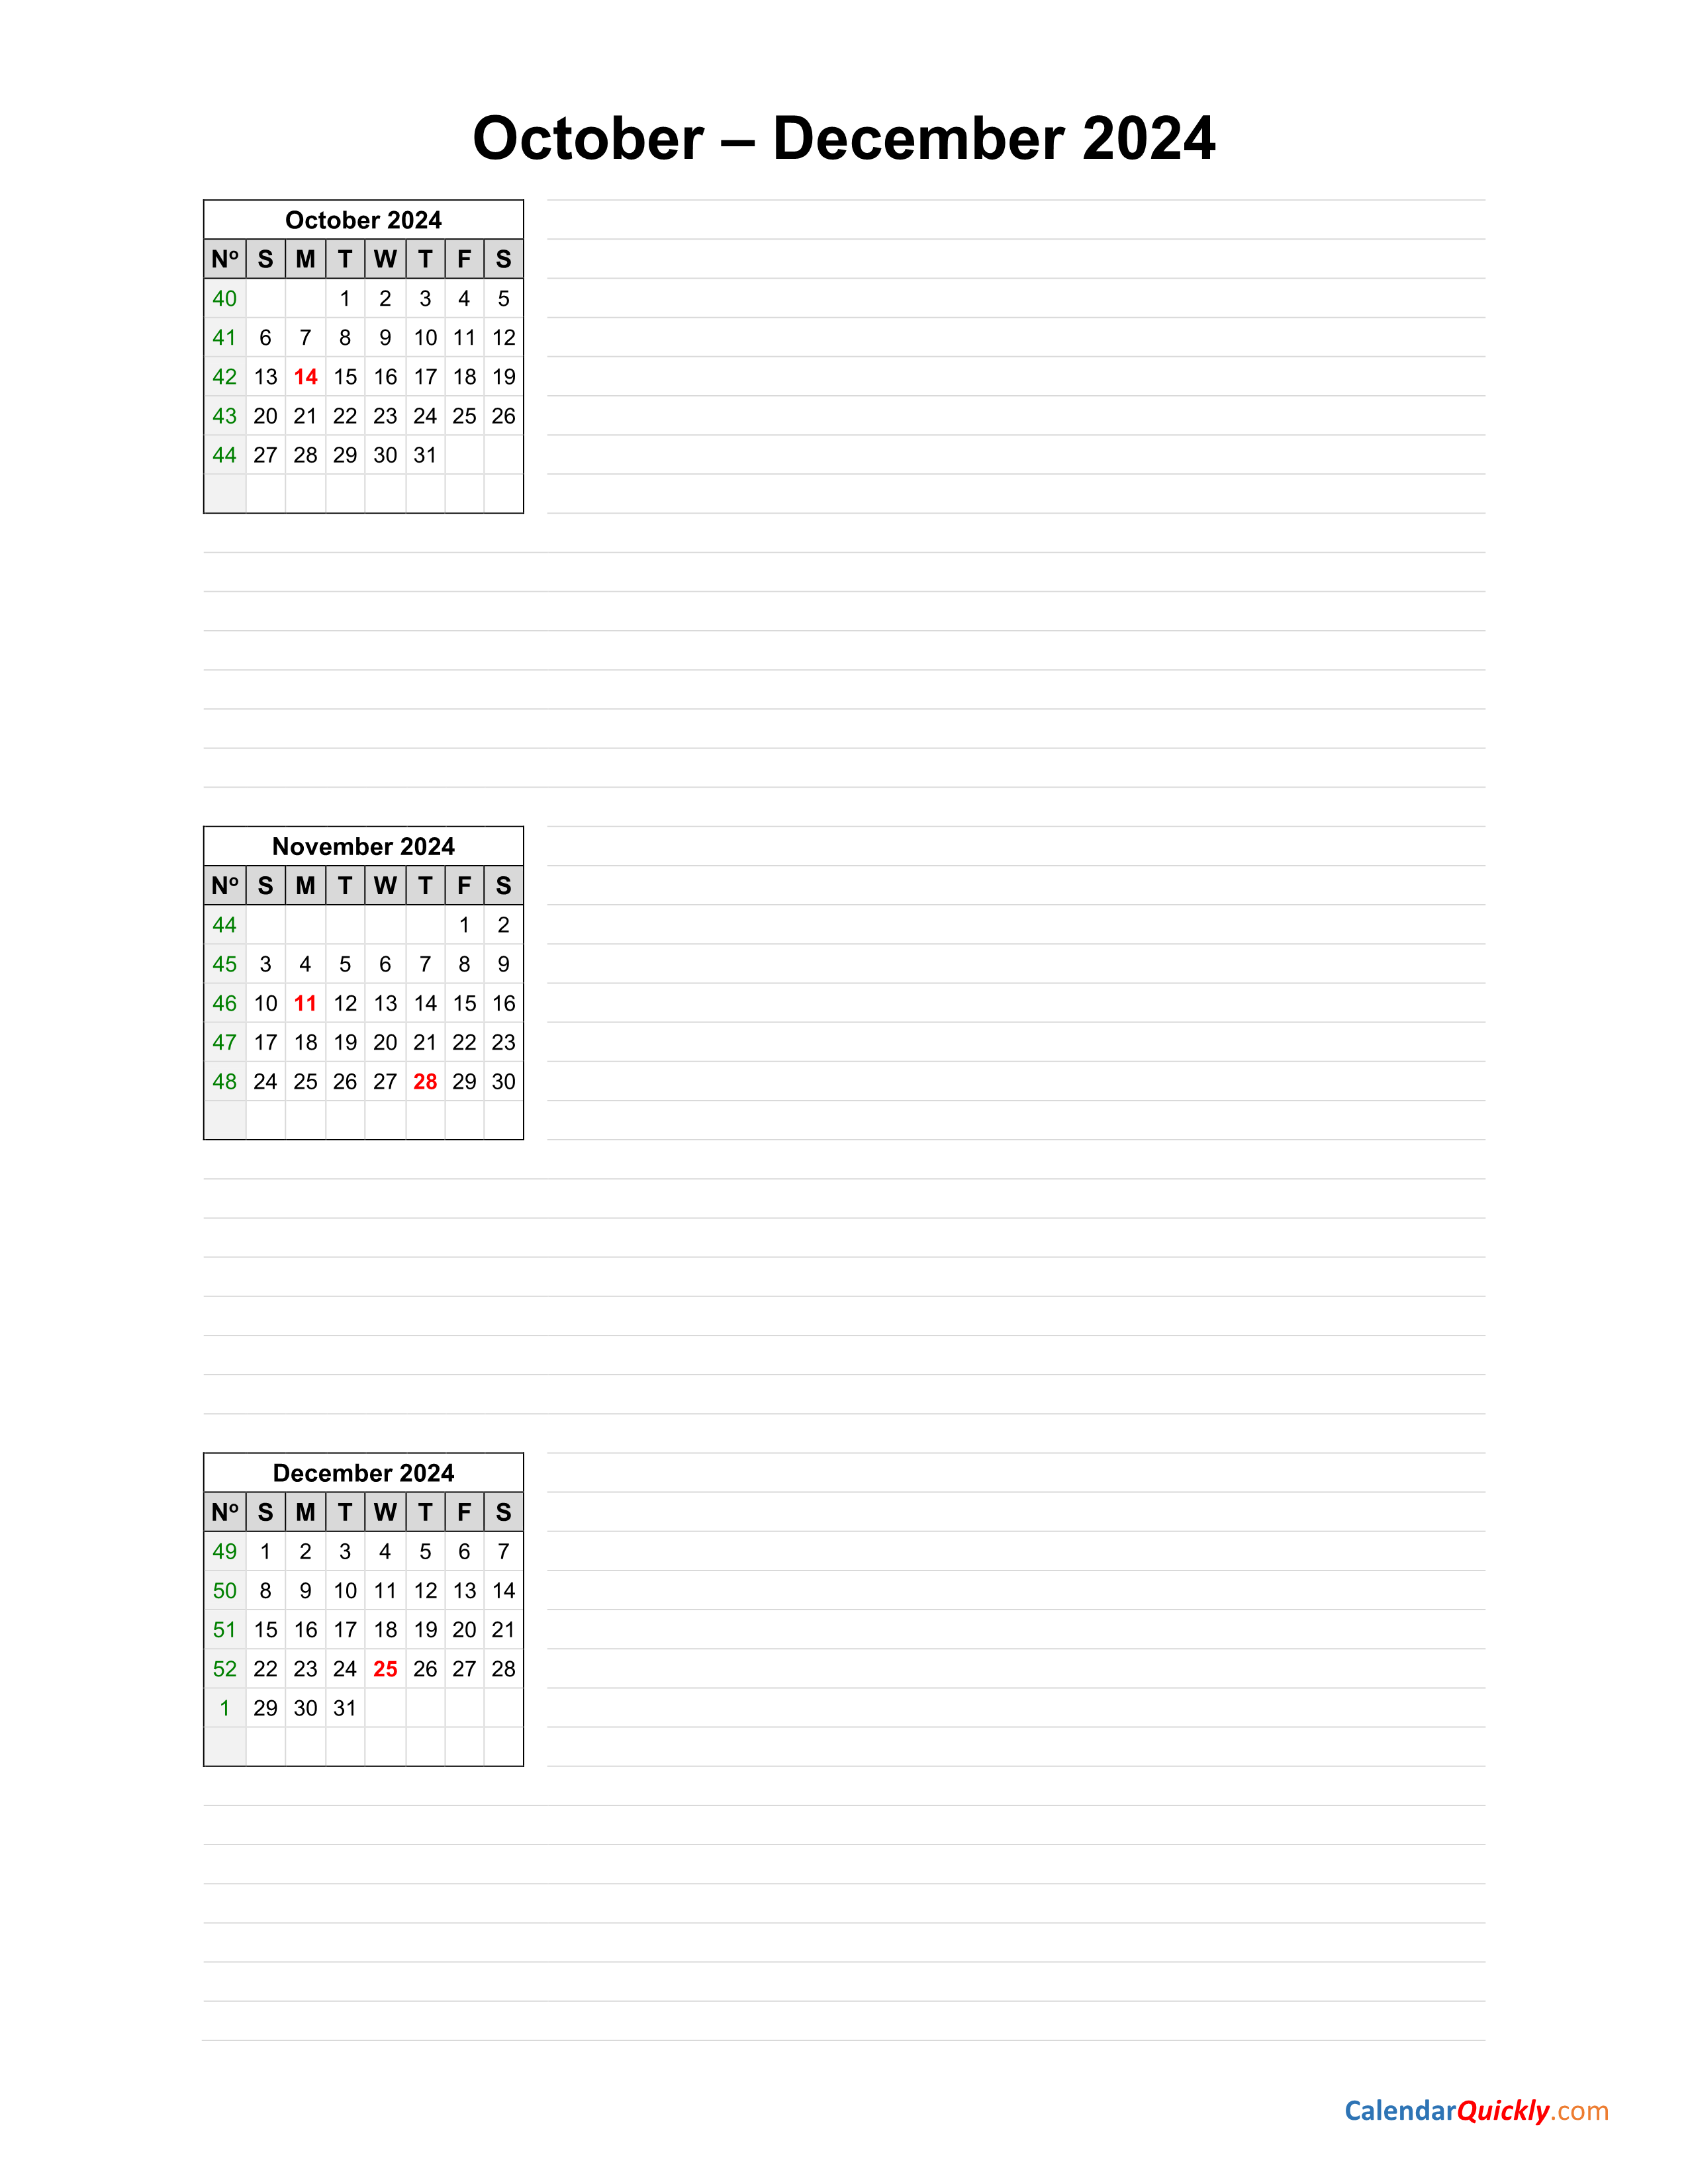 October to December 2024 Calendar | Calendar Quickly